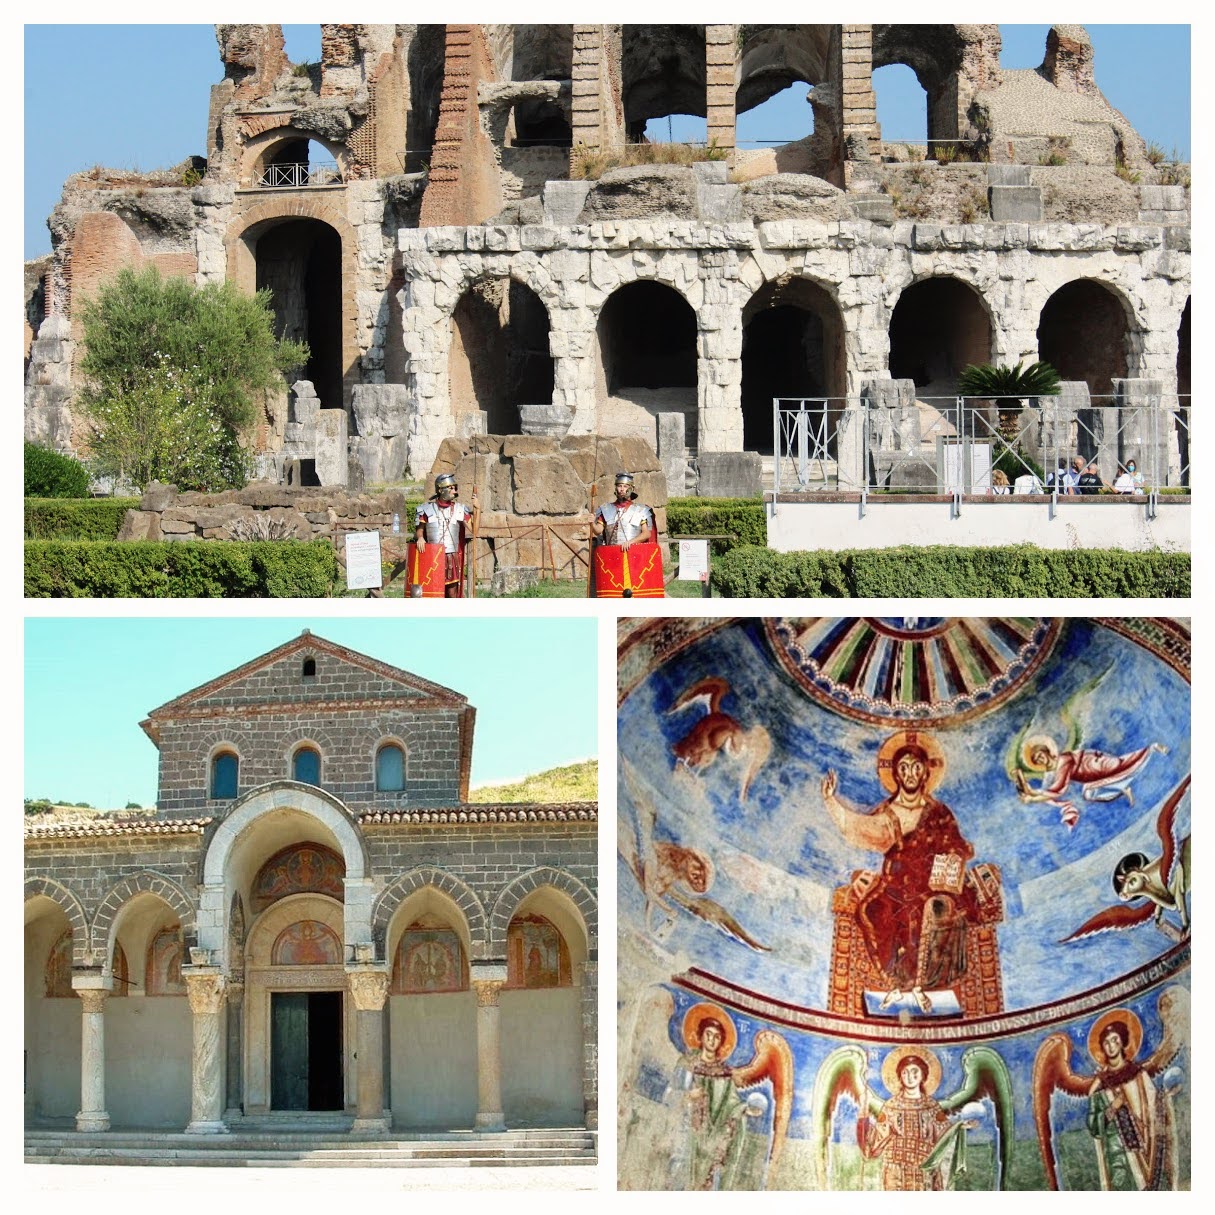 Dall'Abbazia di Sant’Angelo in Formis all'anfiteatro campano di Santa Maria Capua Vetere: doppia passeggiata nella Storia!